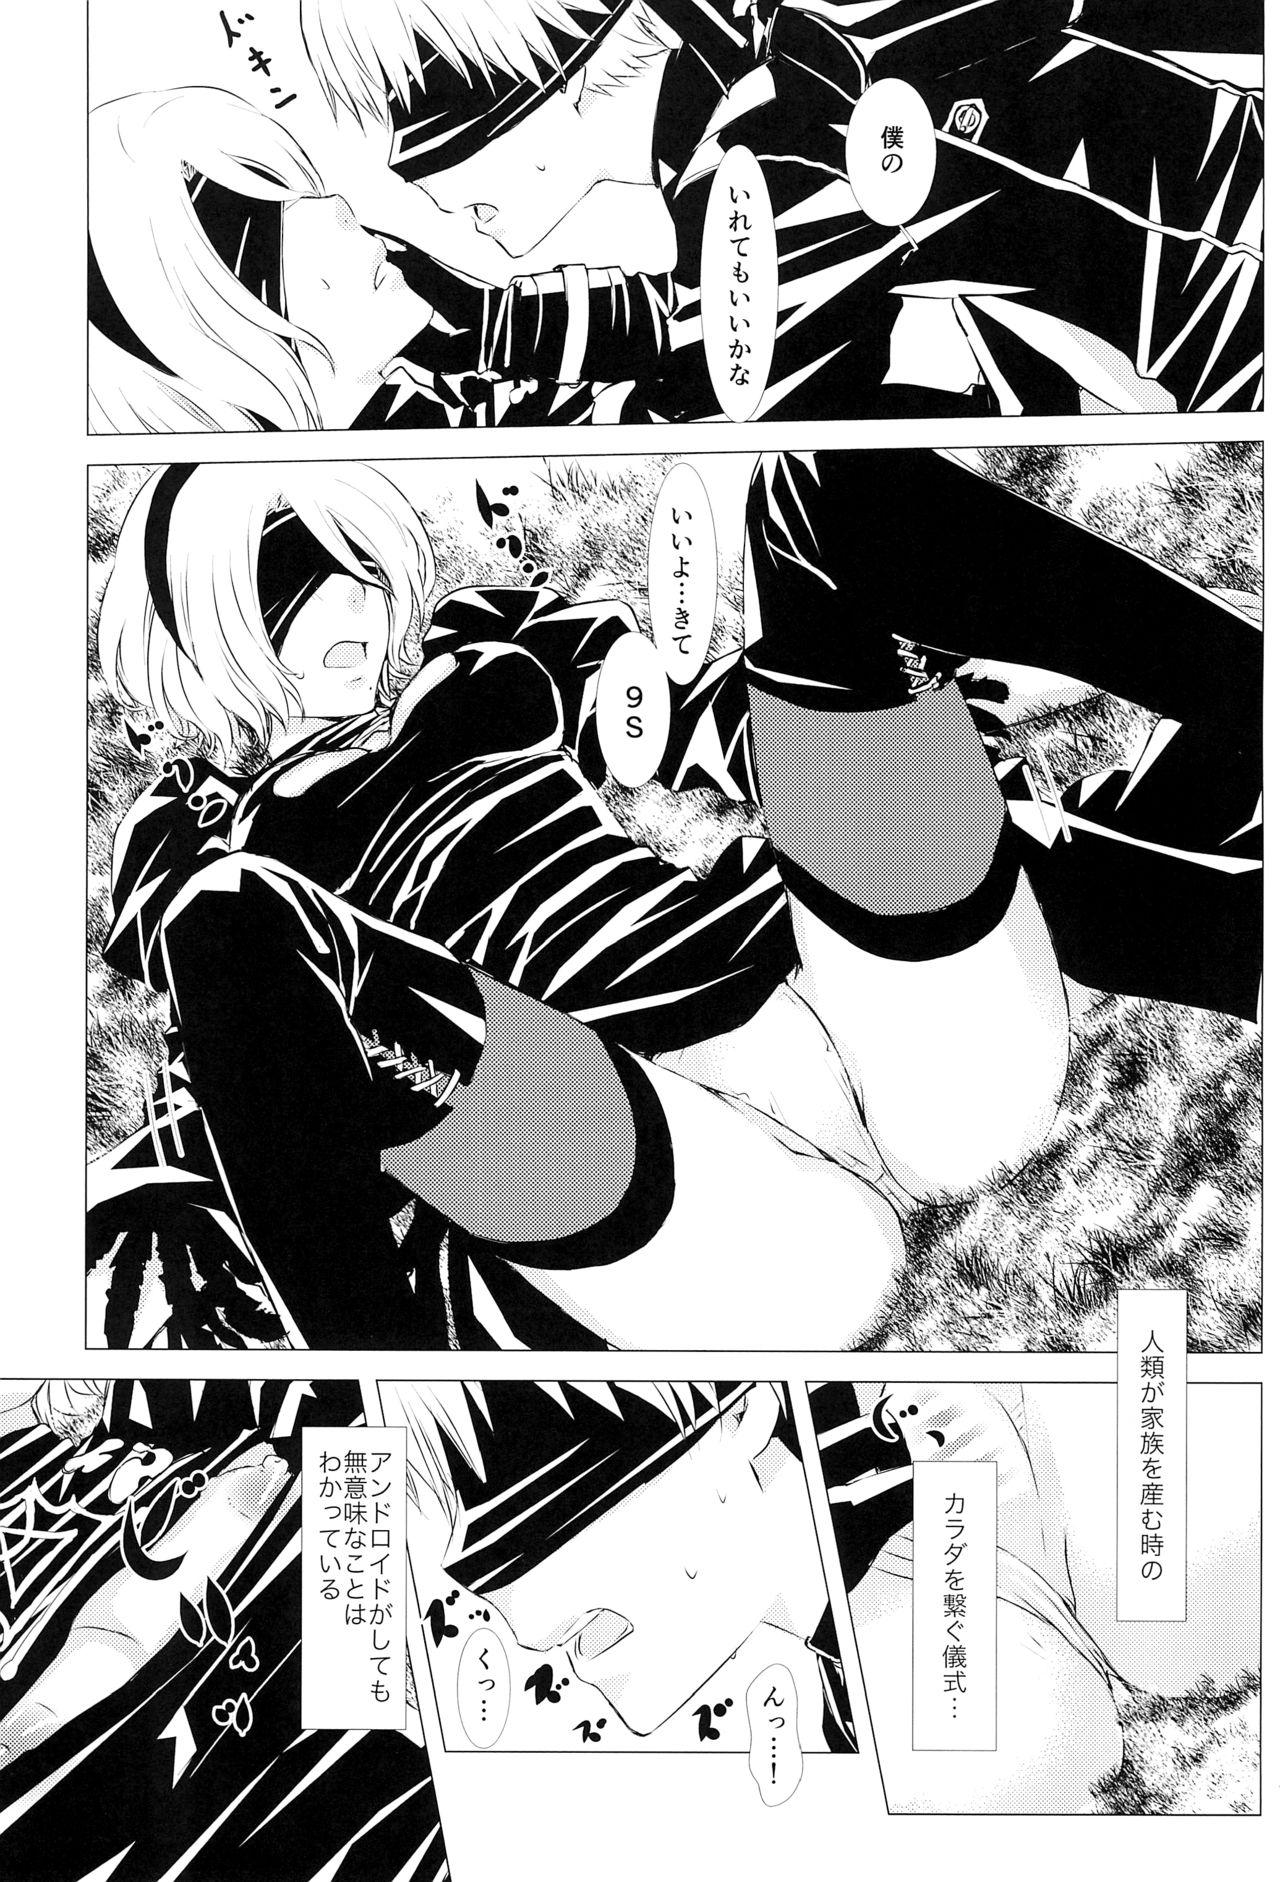 Buceta Shinou ni Nemuru - Nier automata Sharing - Page 12